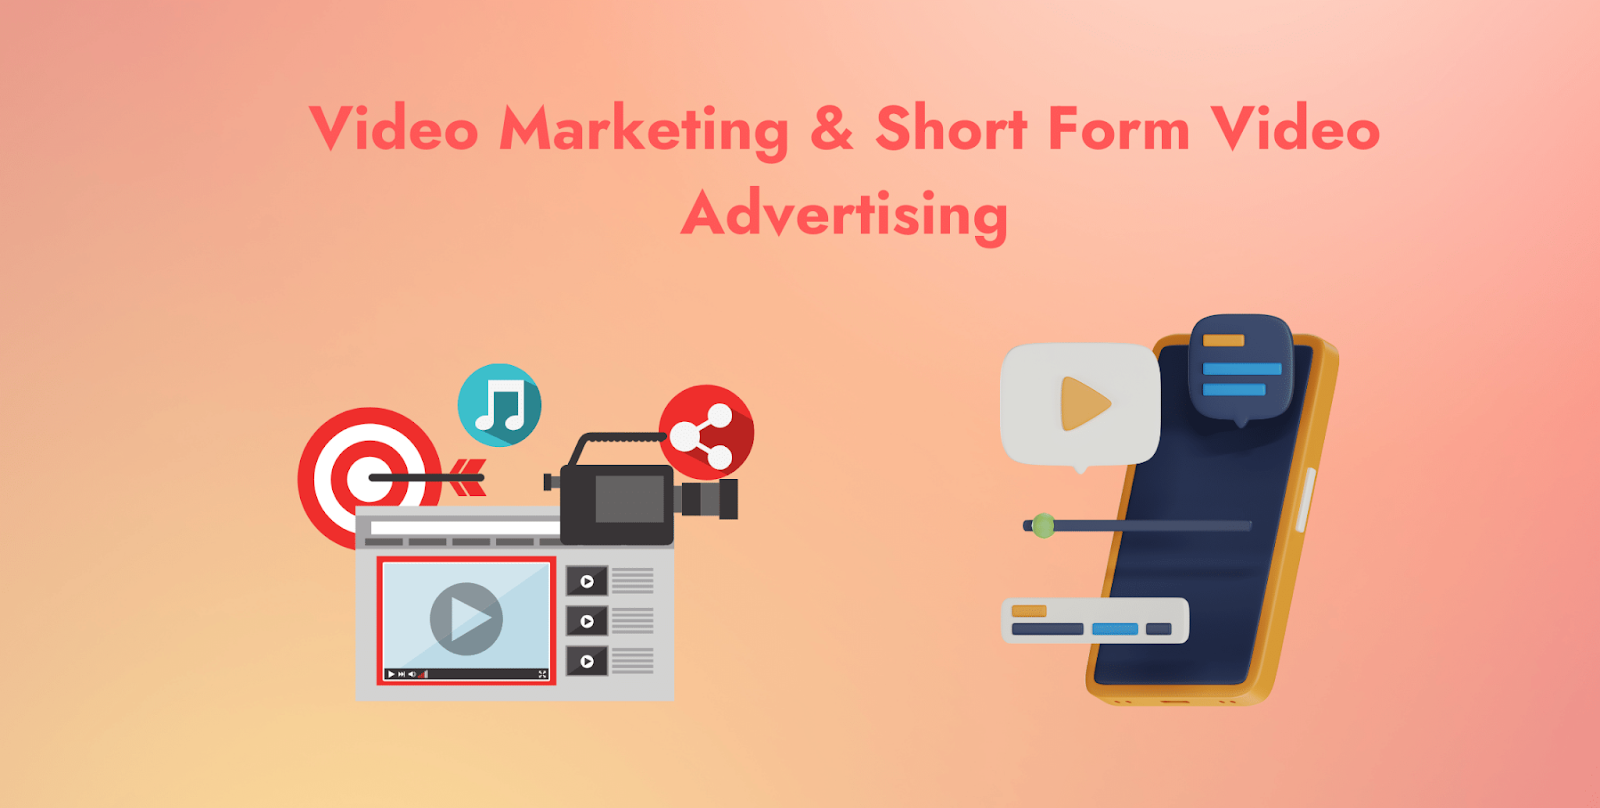 Video Marketing & Short Form Video Advertising